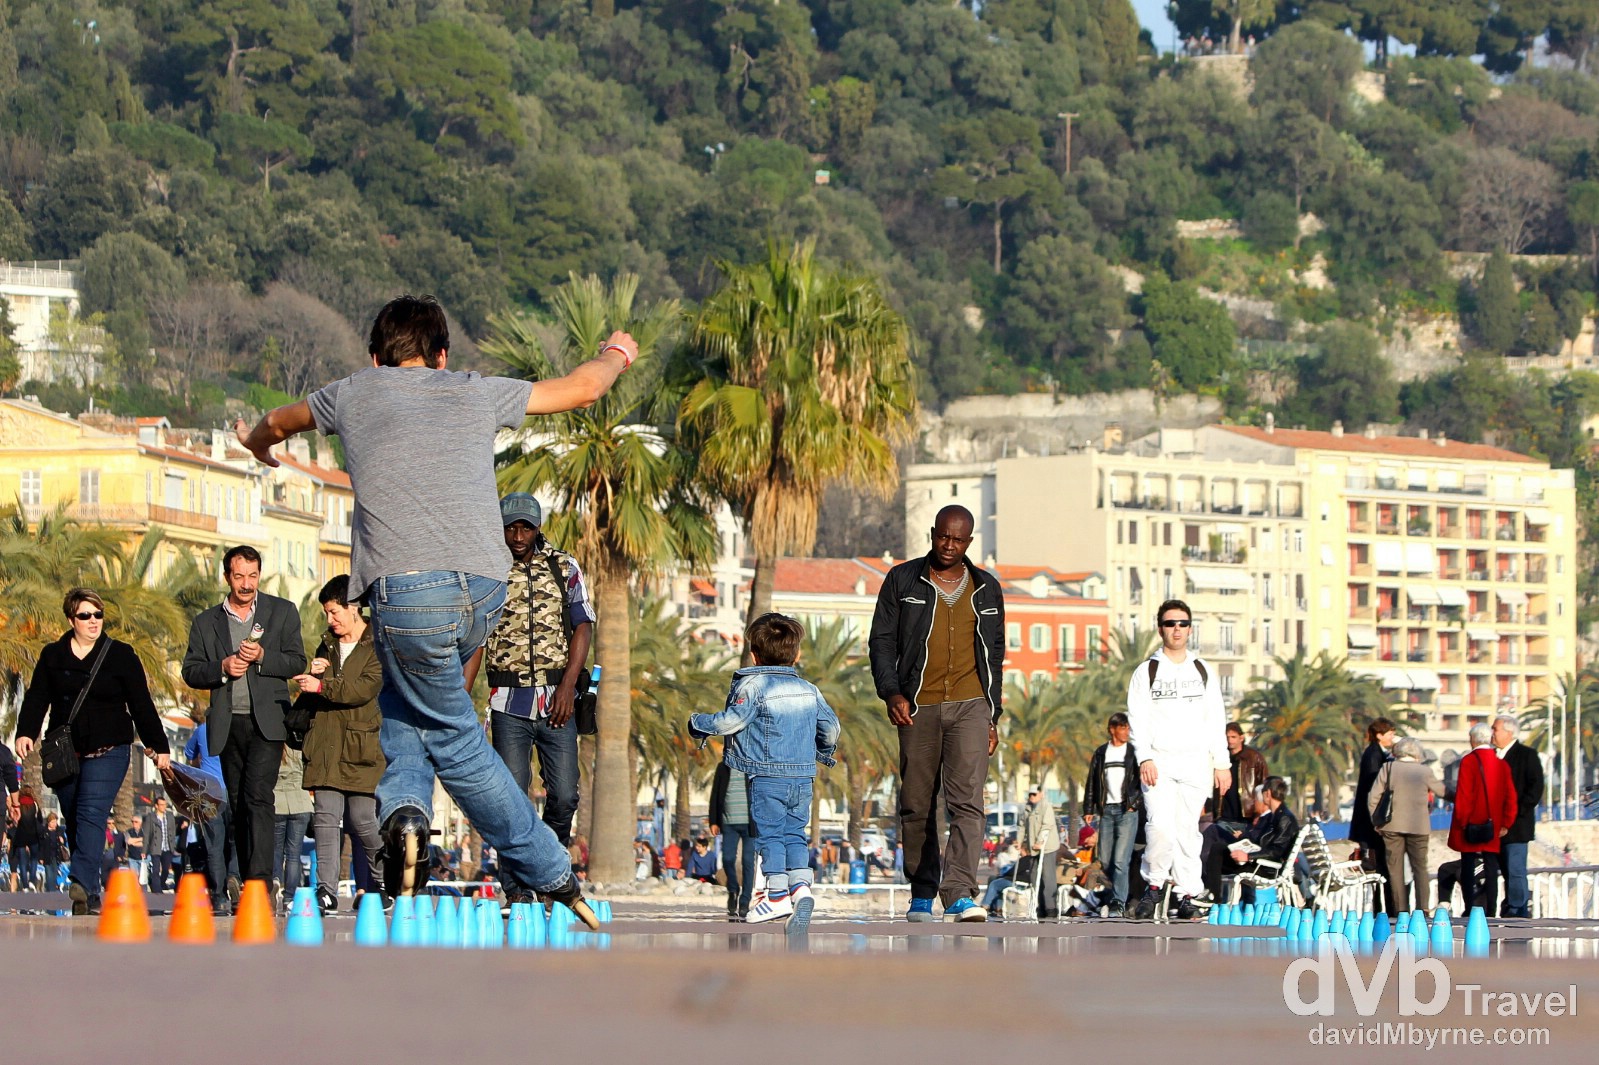 Activity on the beachfront Promenade des Anglais, Nice, Côte d'Azur, France. March 14, 2014.